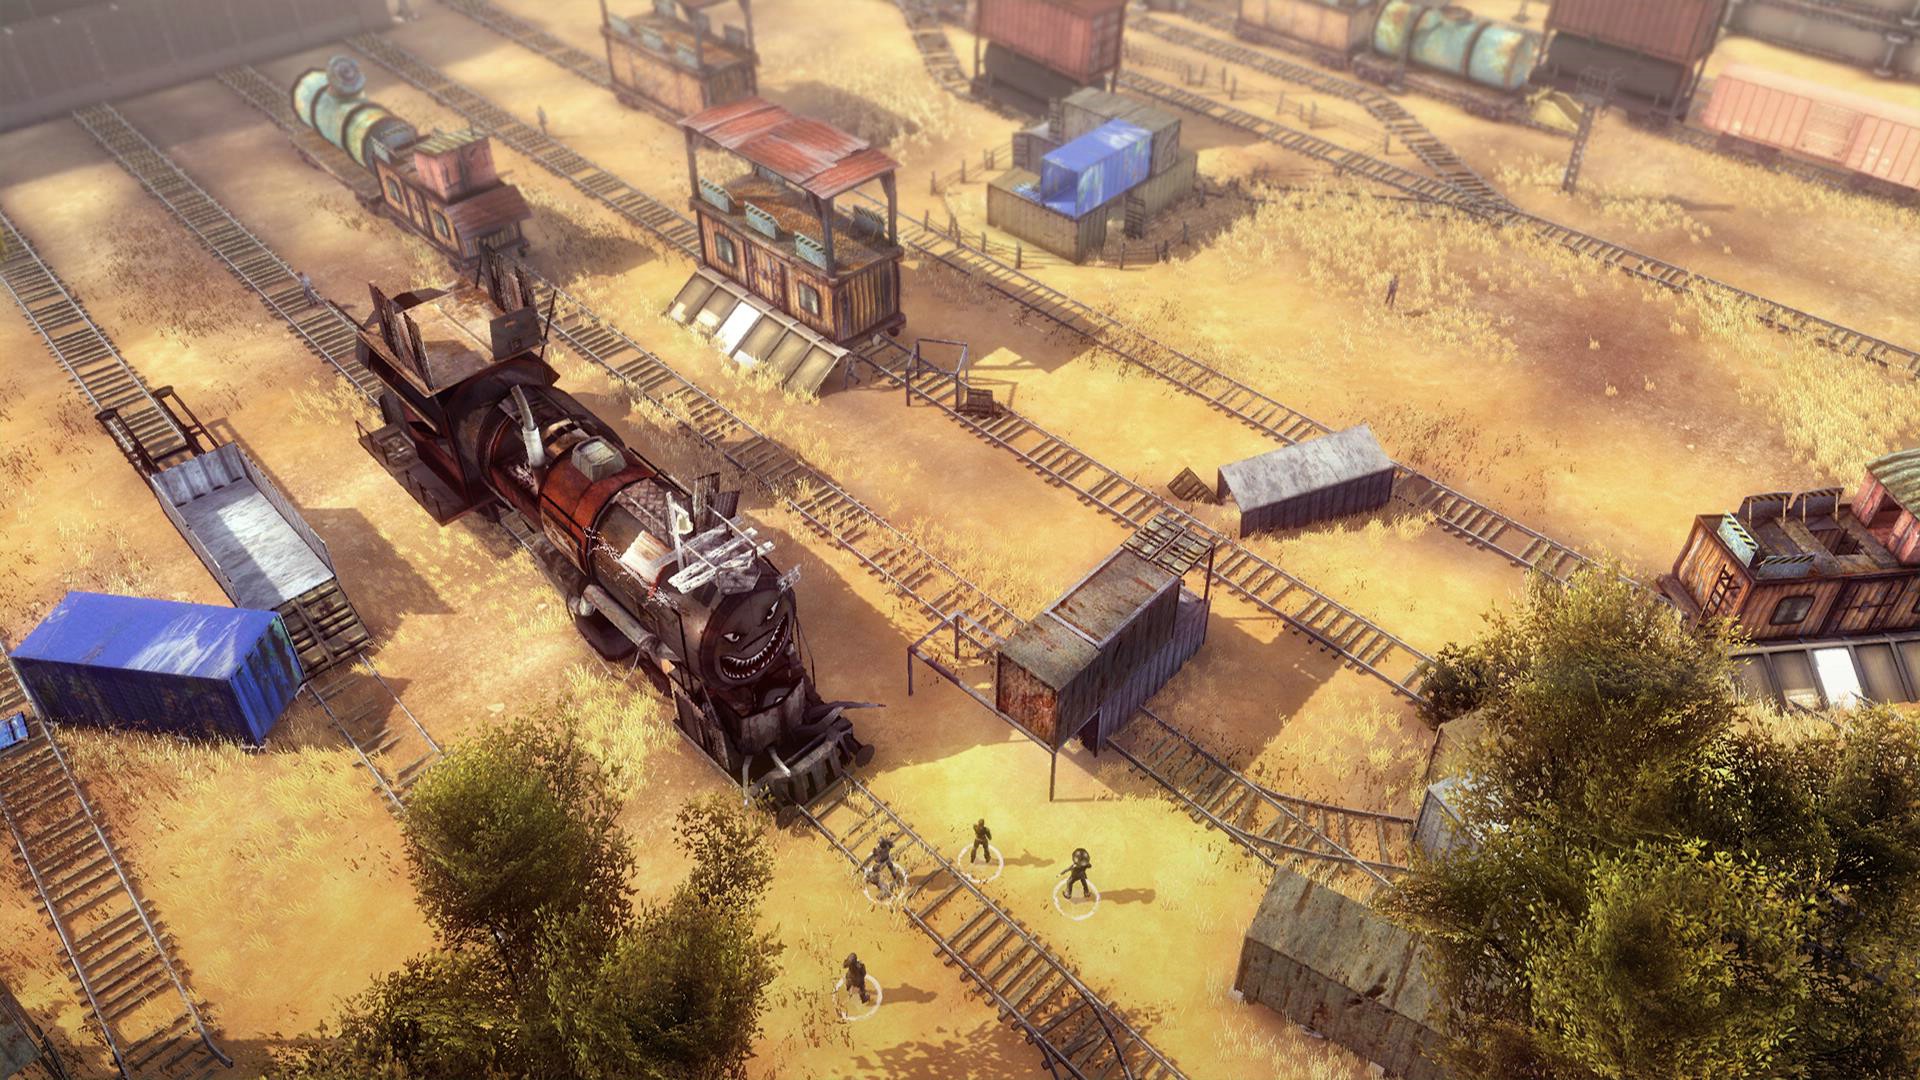 Oryginalny Wasteland wkrótce w cyfrowej dystrybucji. Nowe screeny z drugiej części